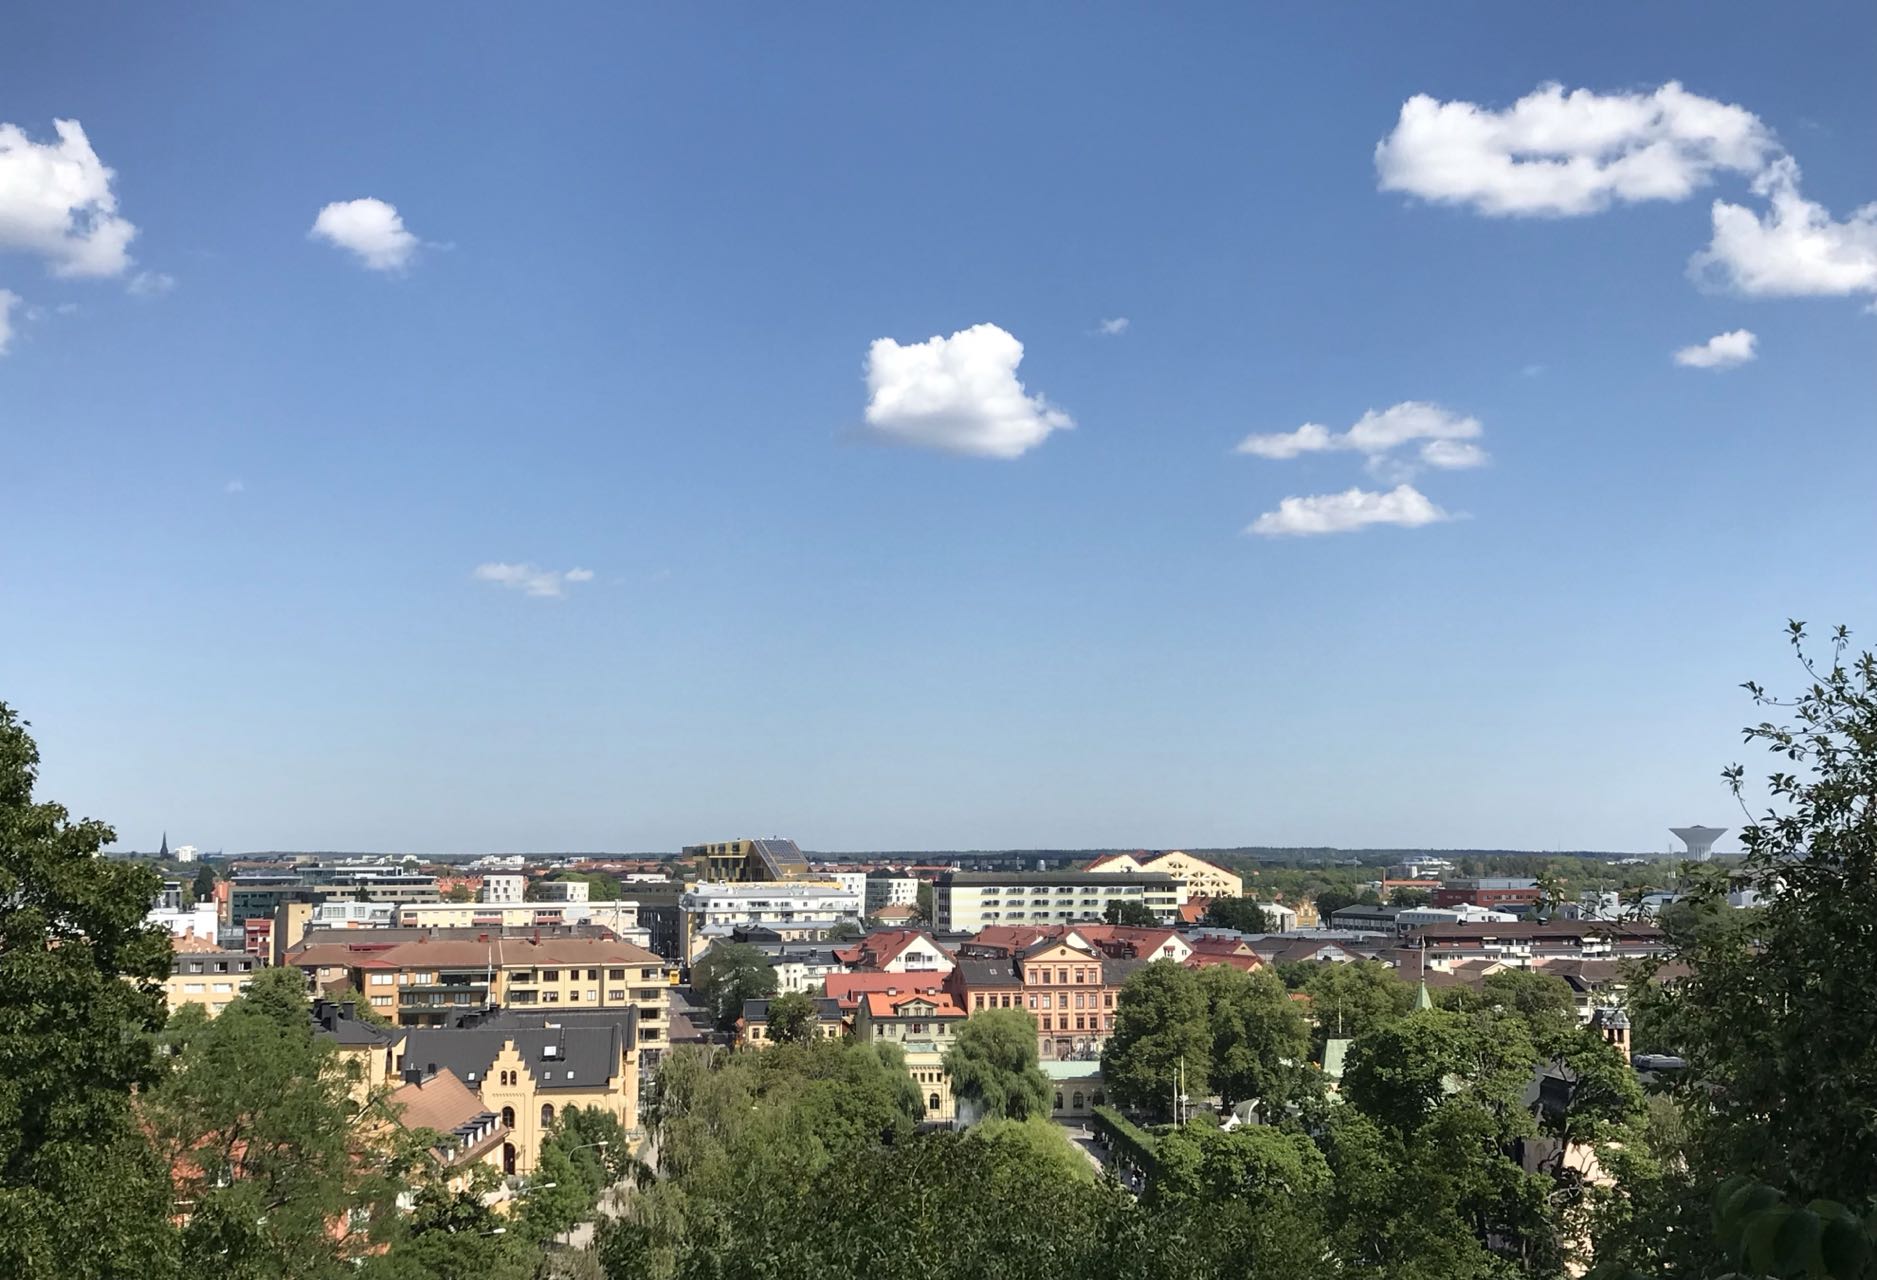 Guangneng's Sweden, Uppsala